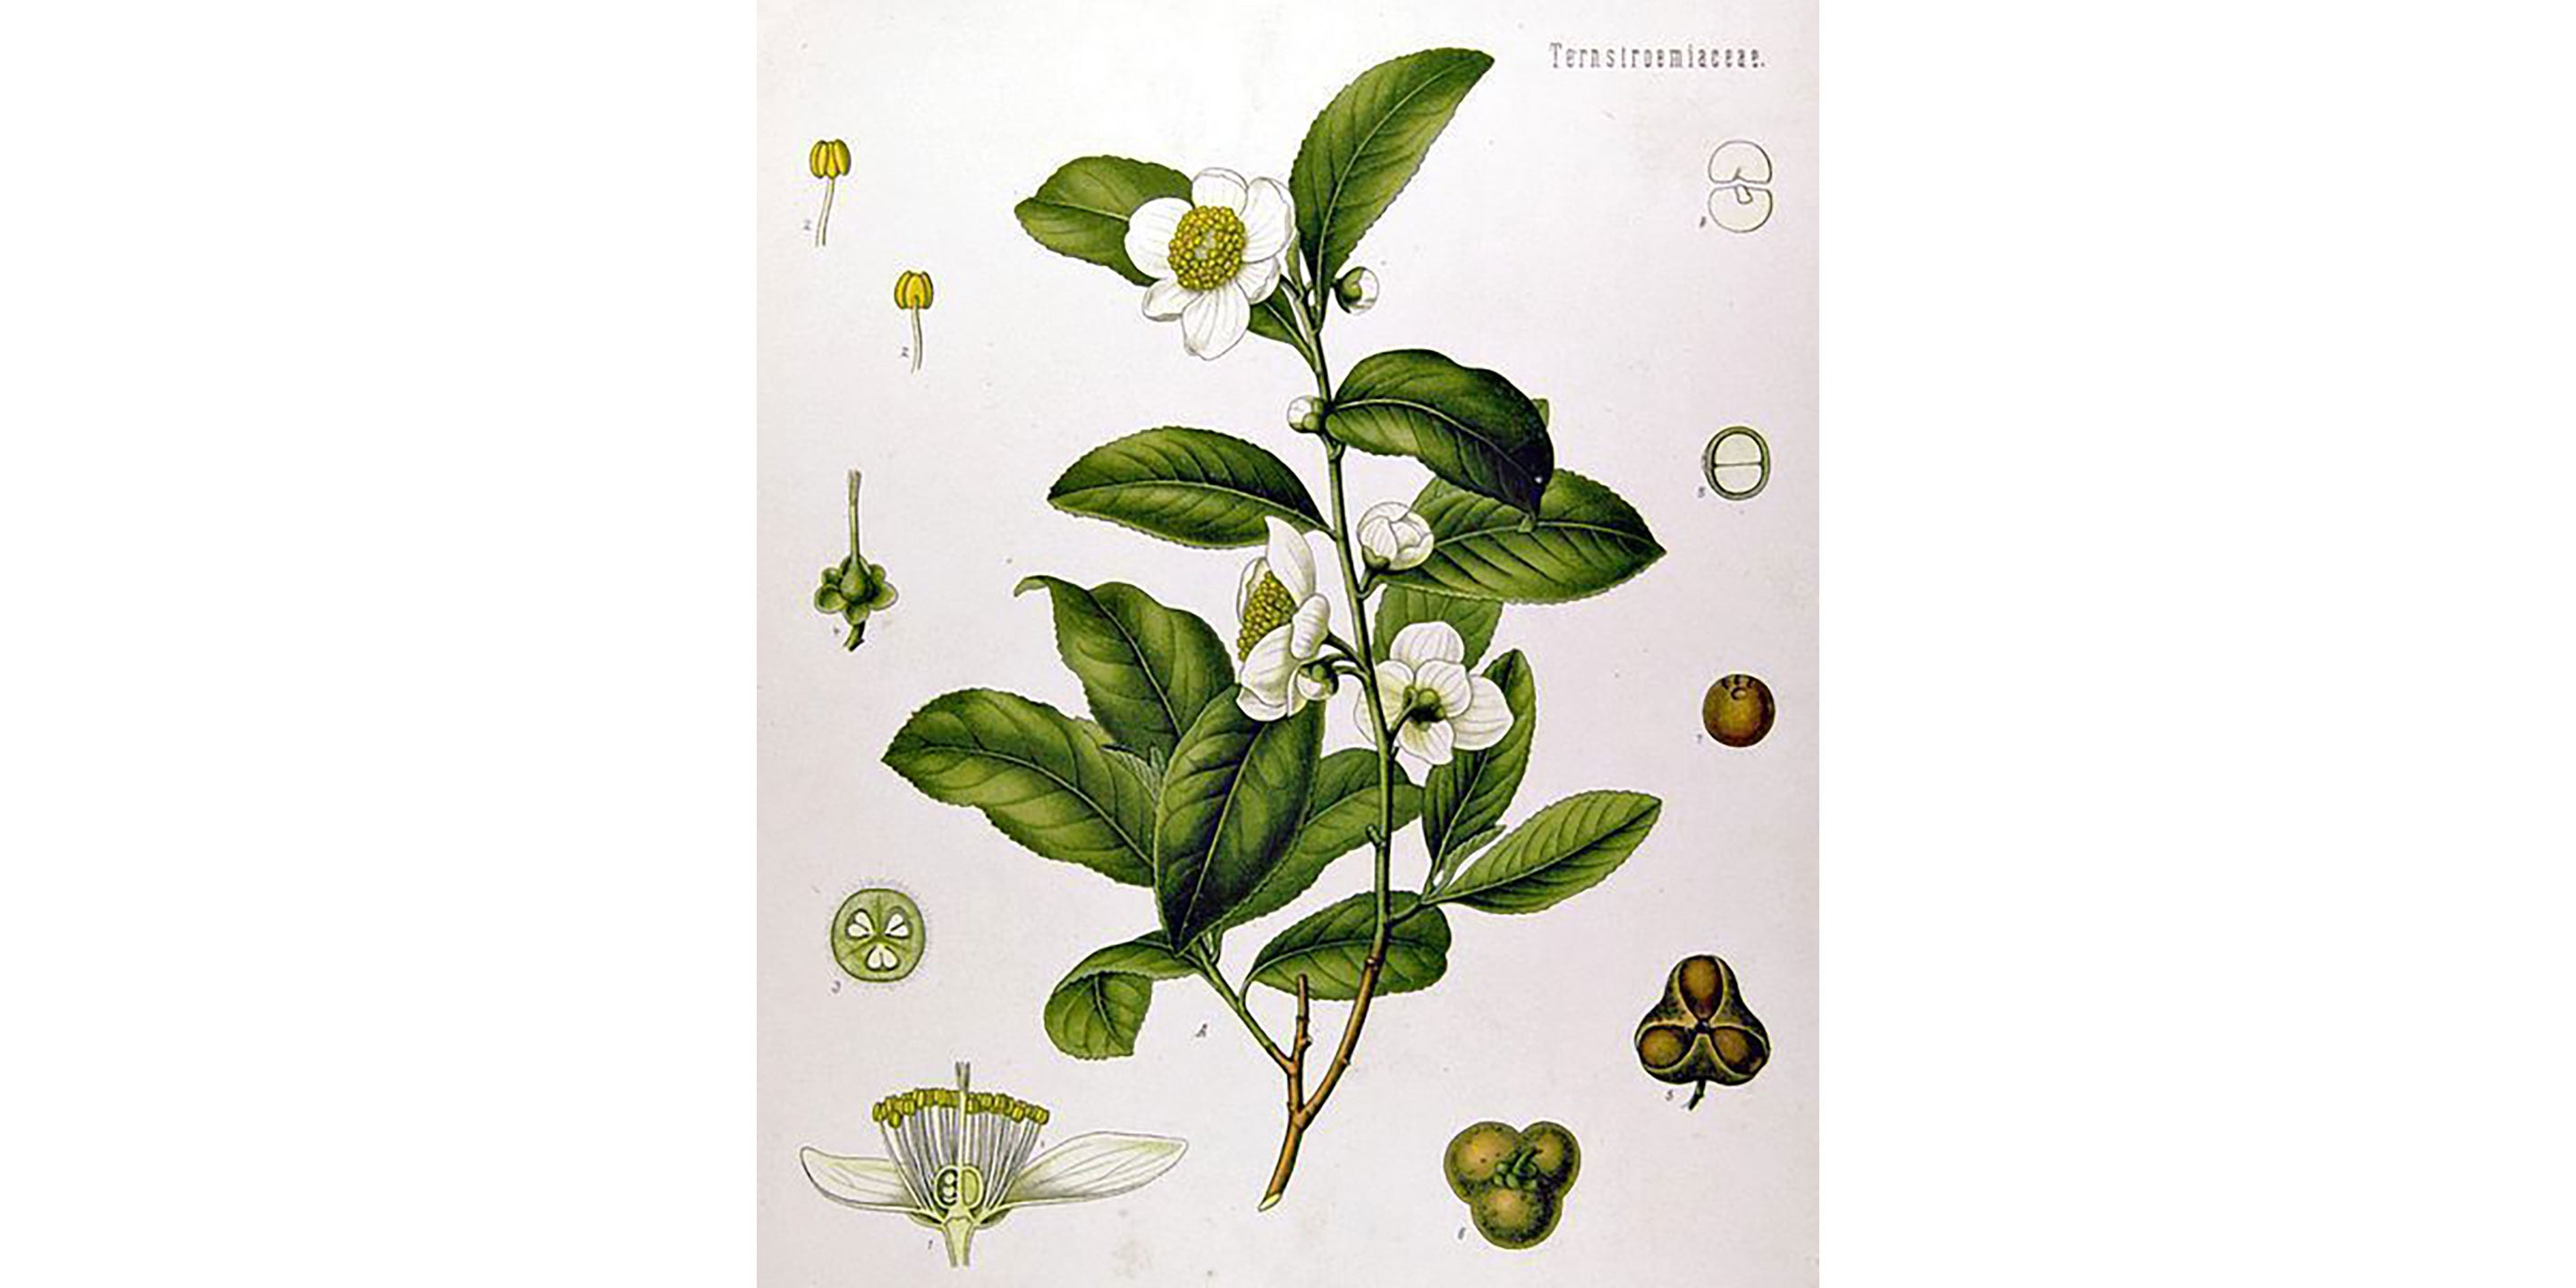 Köhler's Medicinal Plants